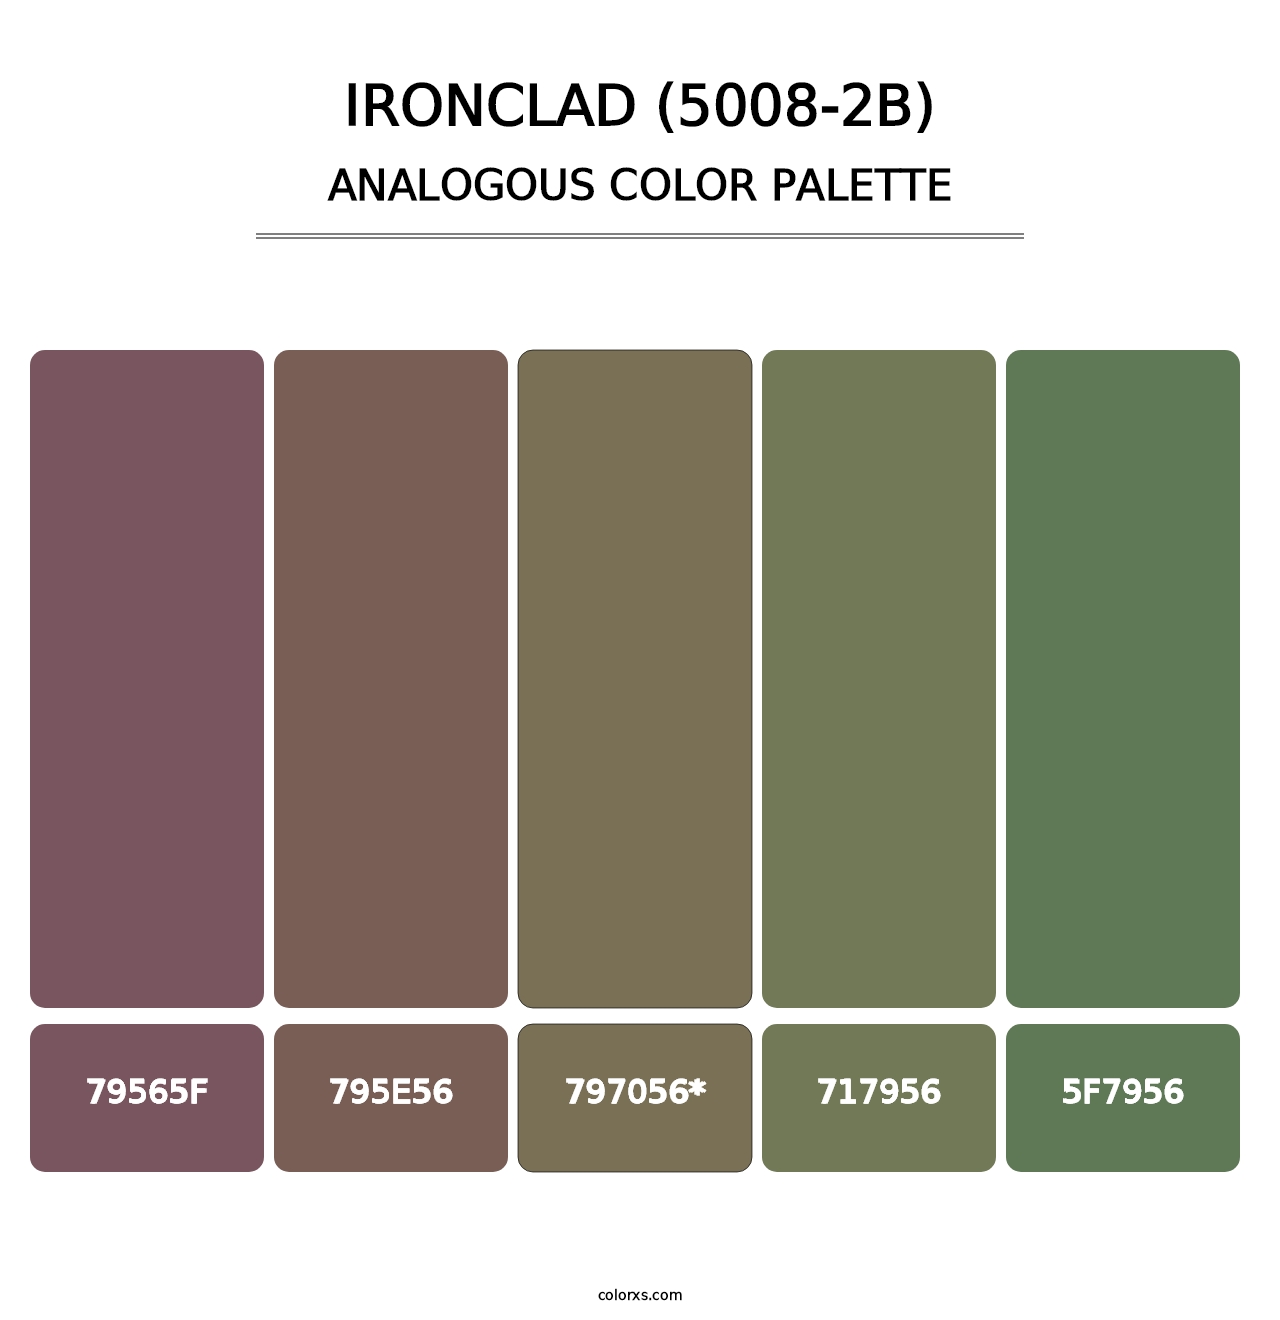 Ironclad (5008-2B) - Analogous Color Palette